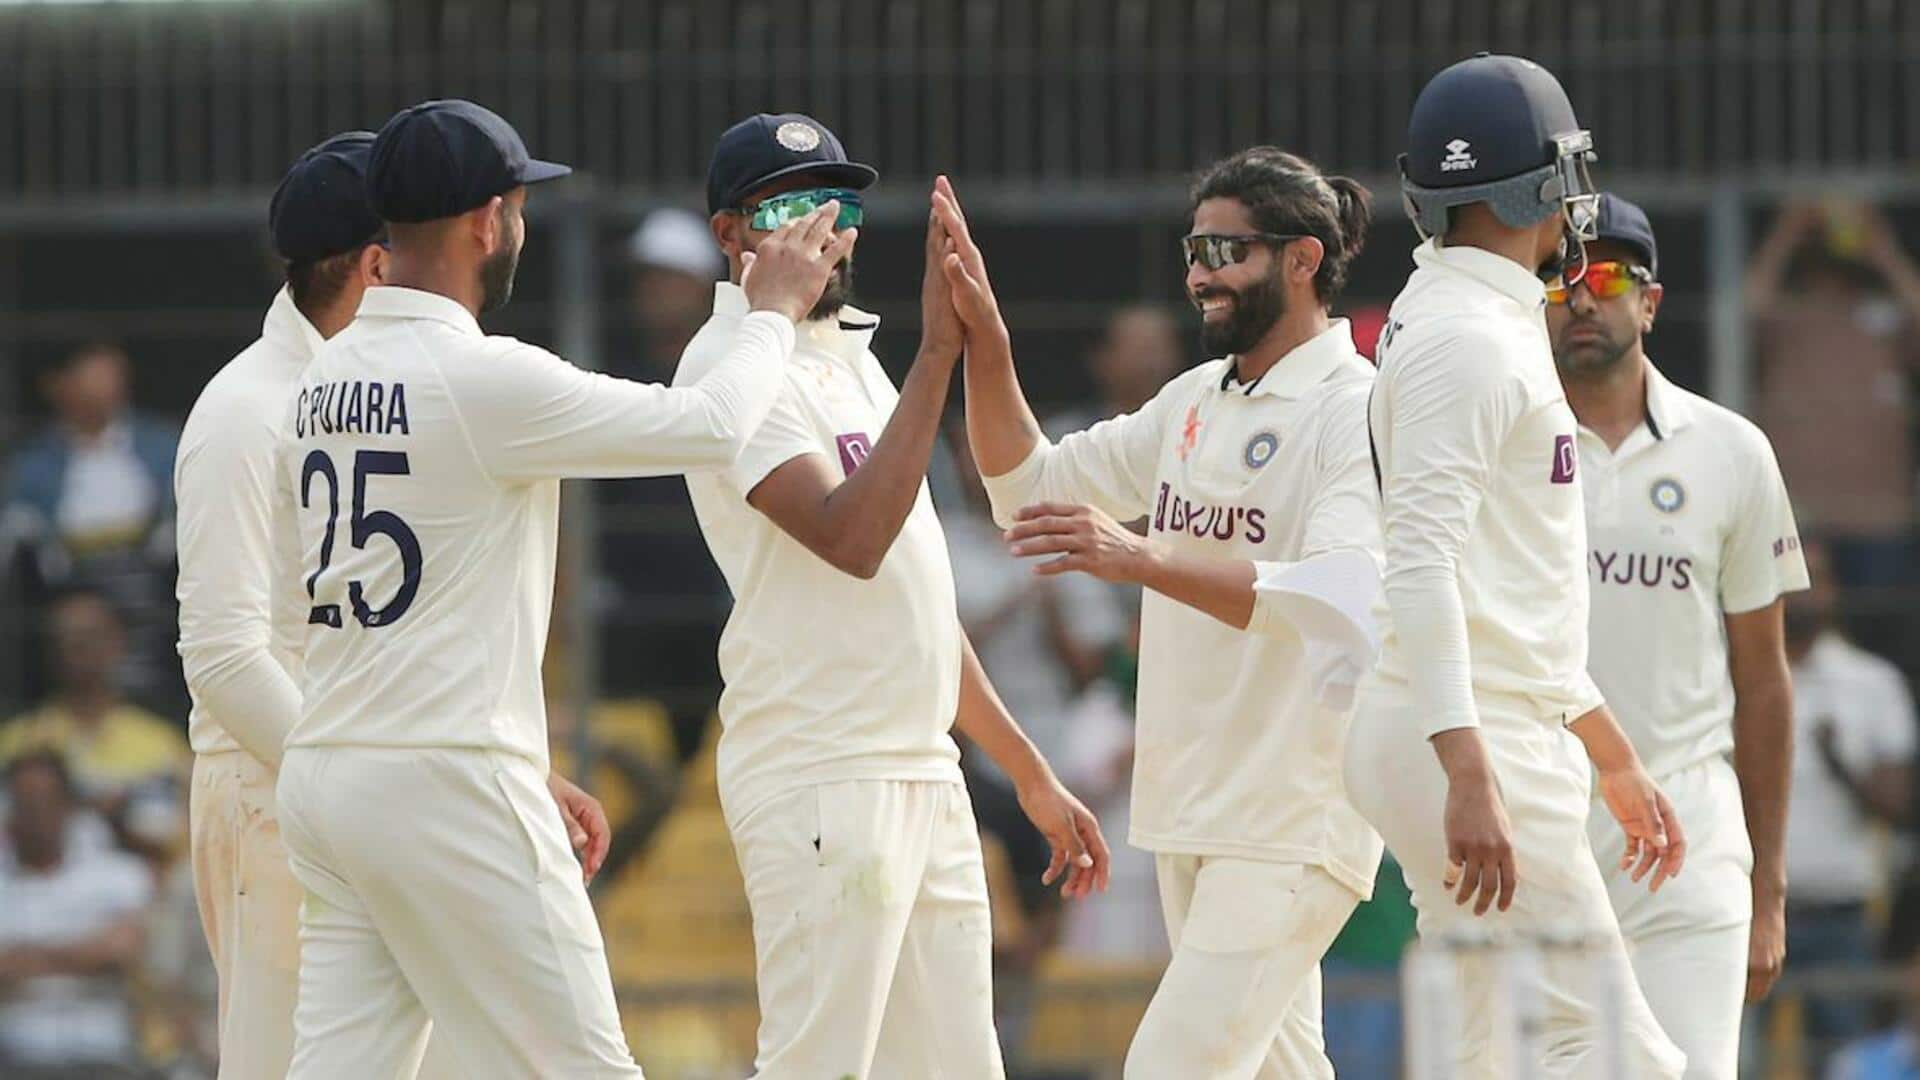 अहमदाबाद टेस्ट: भारत के खिलाफ ऑस्ट्रेलिया ने टॉस जीतकर चुनी बल्लेबाजी, जानिए प्लेइंग इलेवन 